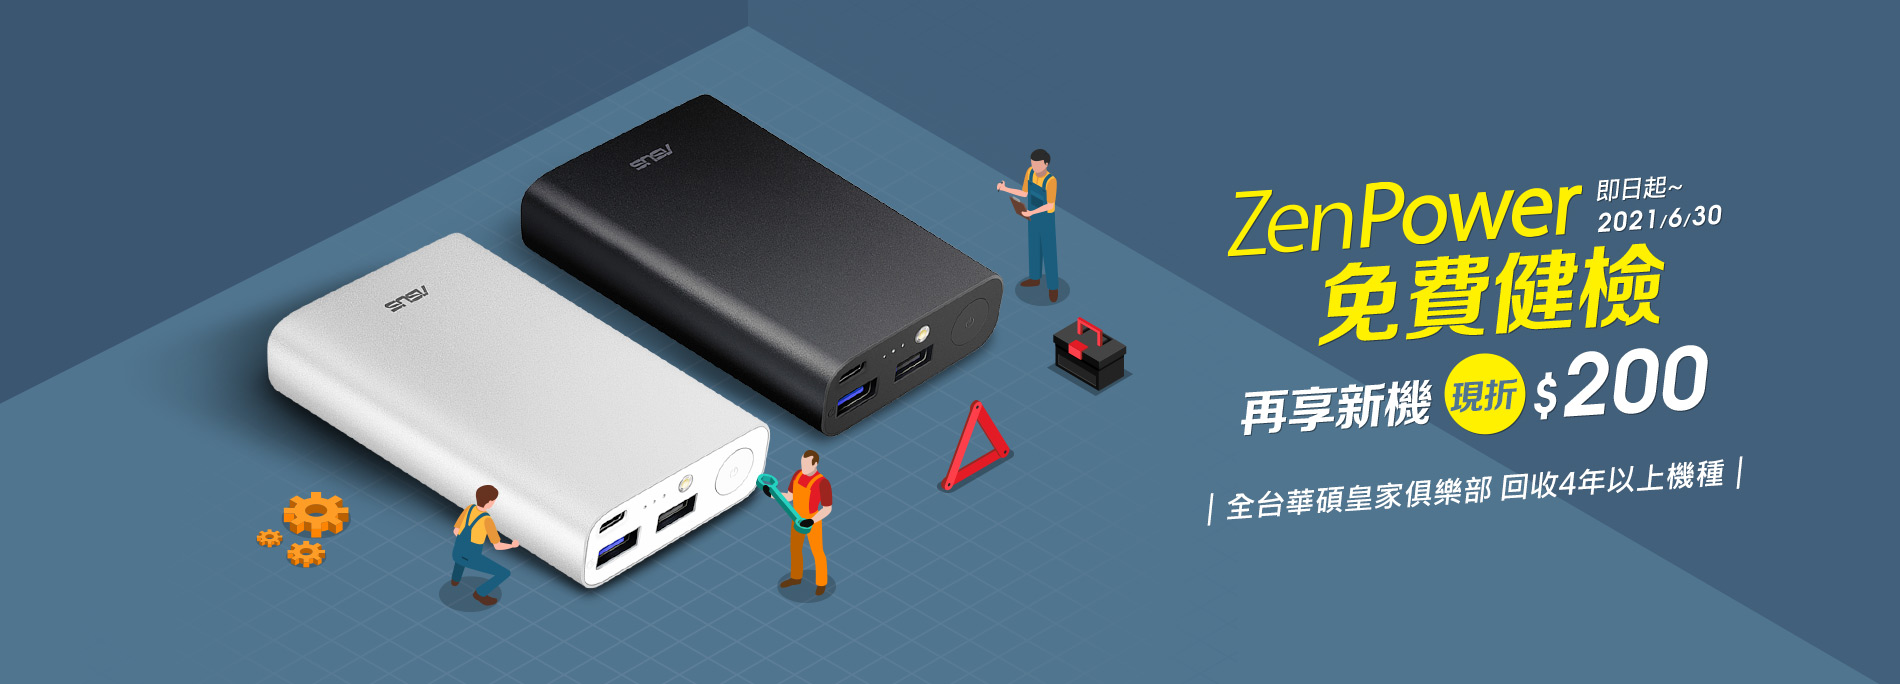 【免費健檢】ZenPower 全系列行動電源